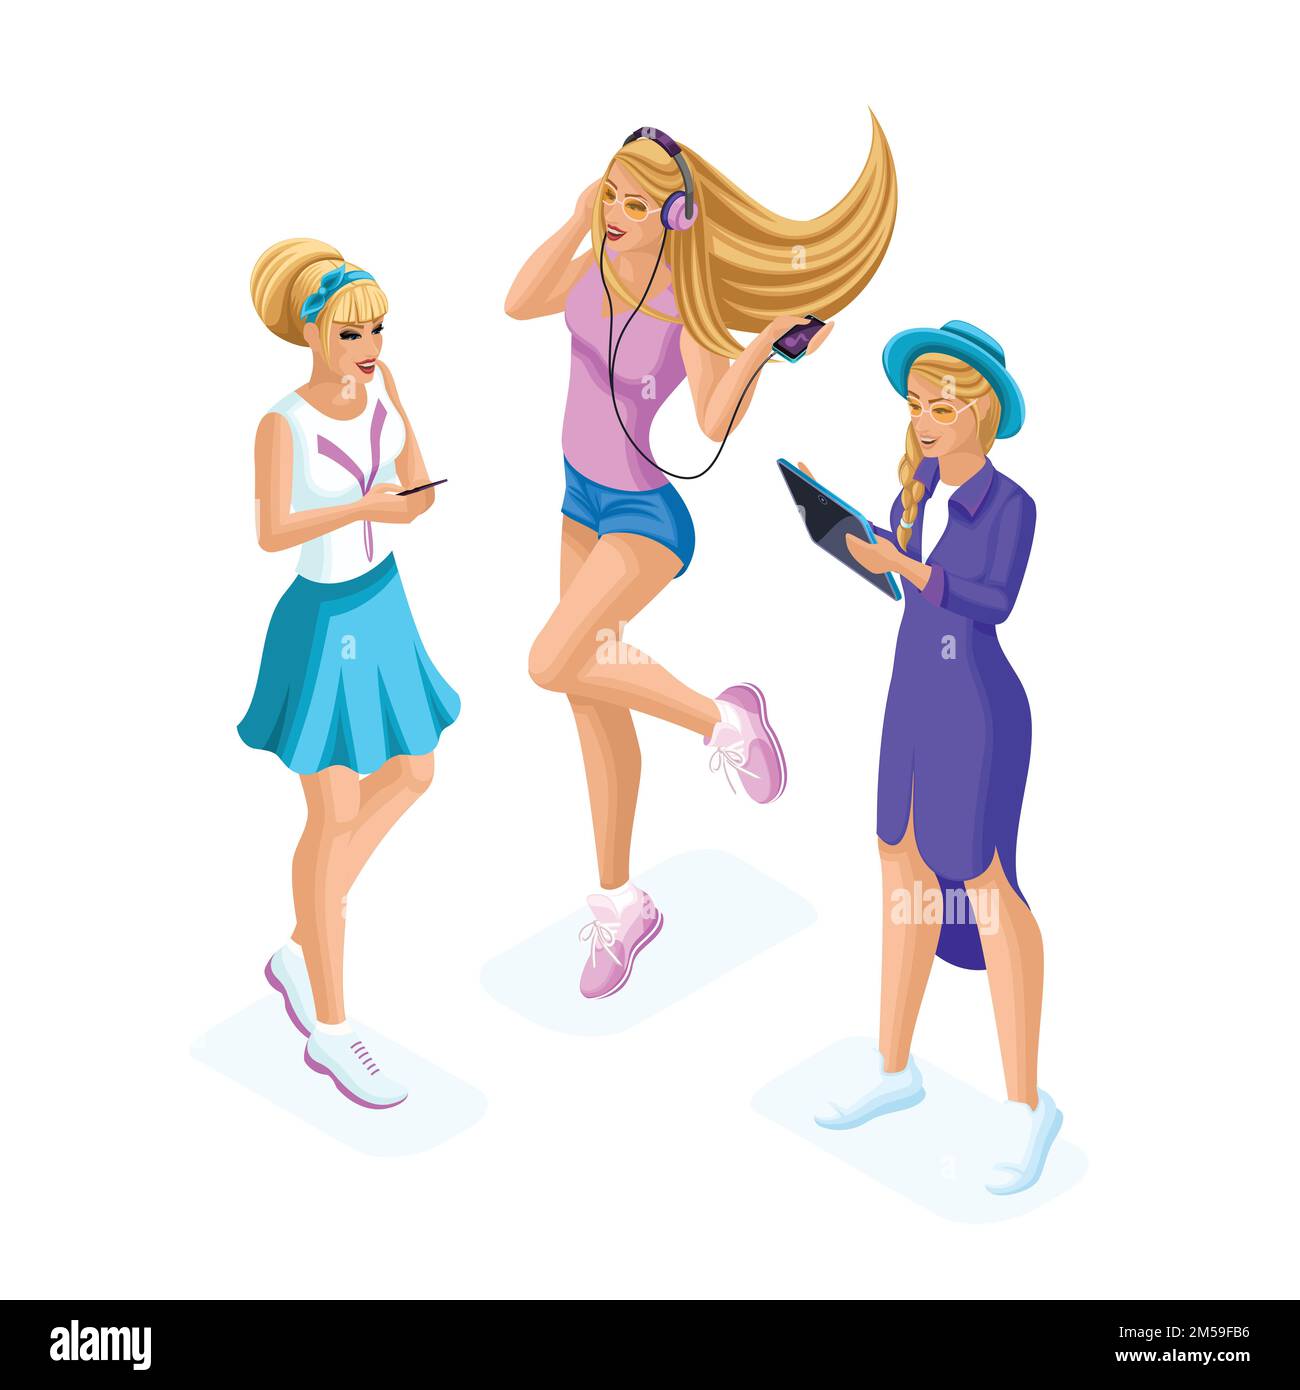 Die Isometrie von Mädchen im Teenageralter, Generation Z, kommuniziert in sozialen Netzwerken freundlich, chattet, teilt Geheimnisse über Gadgets, Telefone, Tablets. Stock Vektor